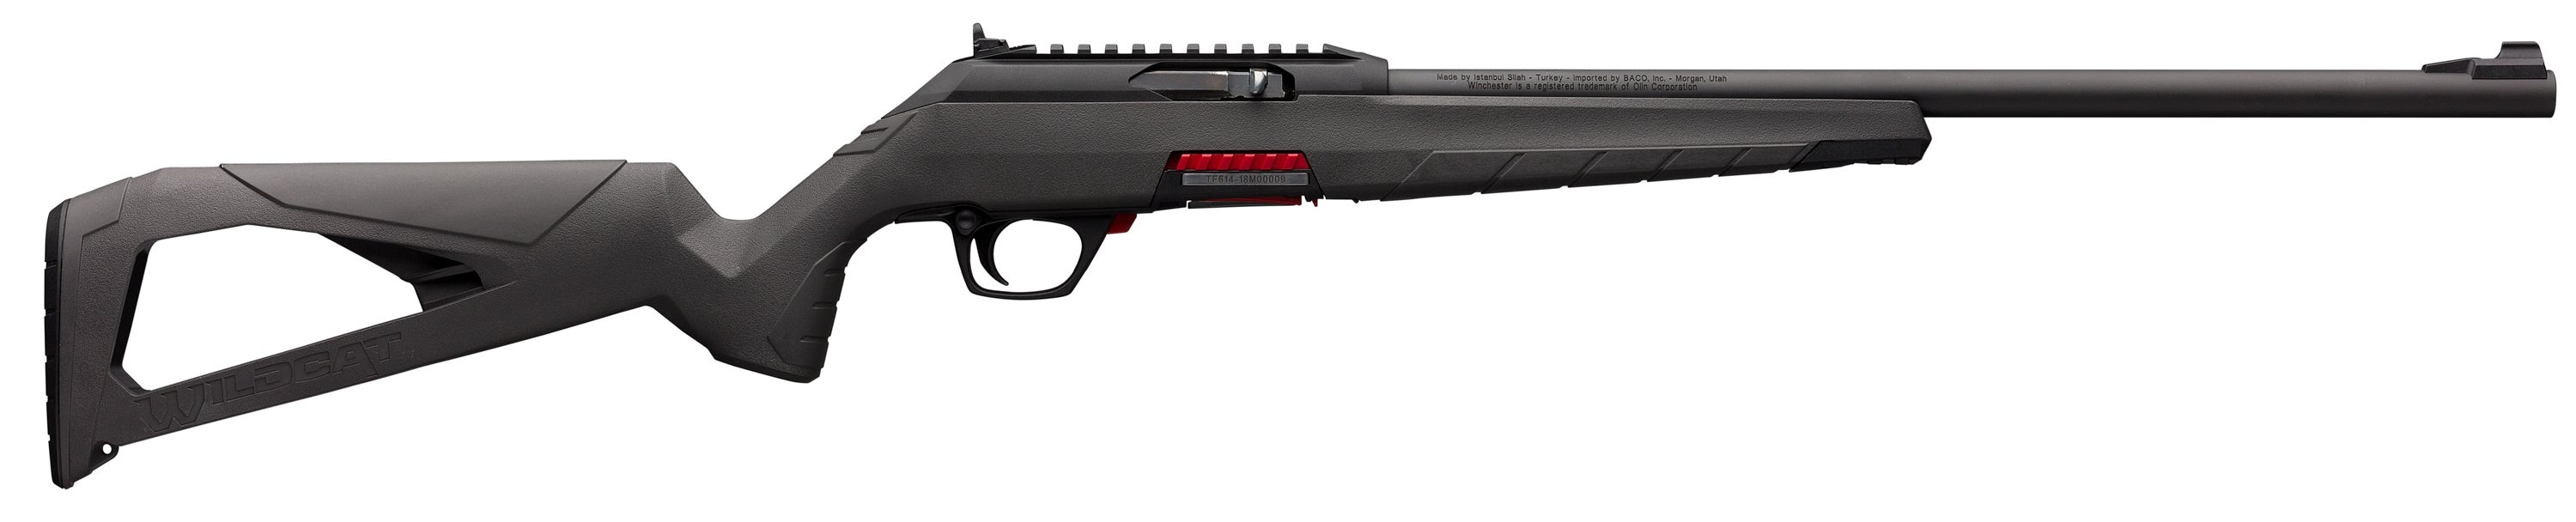 The new Winchester Wildcat semi-auto 22 LR rimfire rifle.